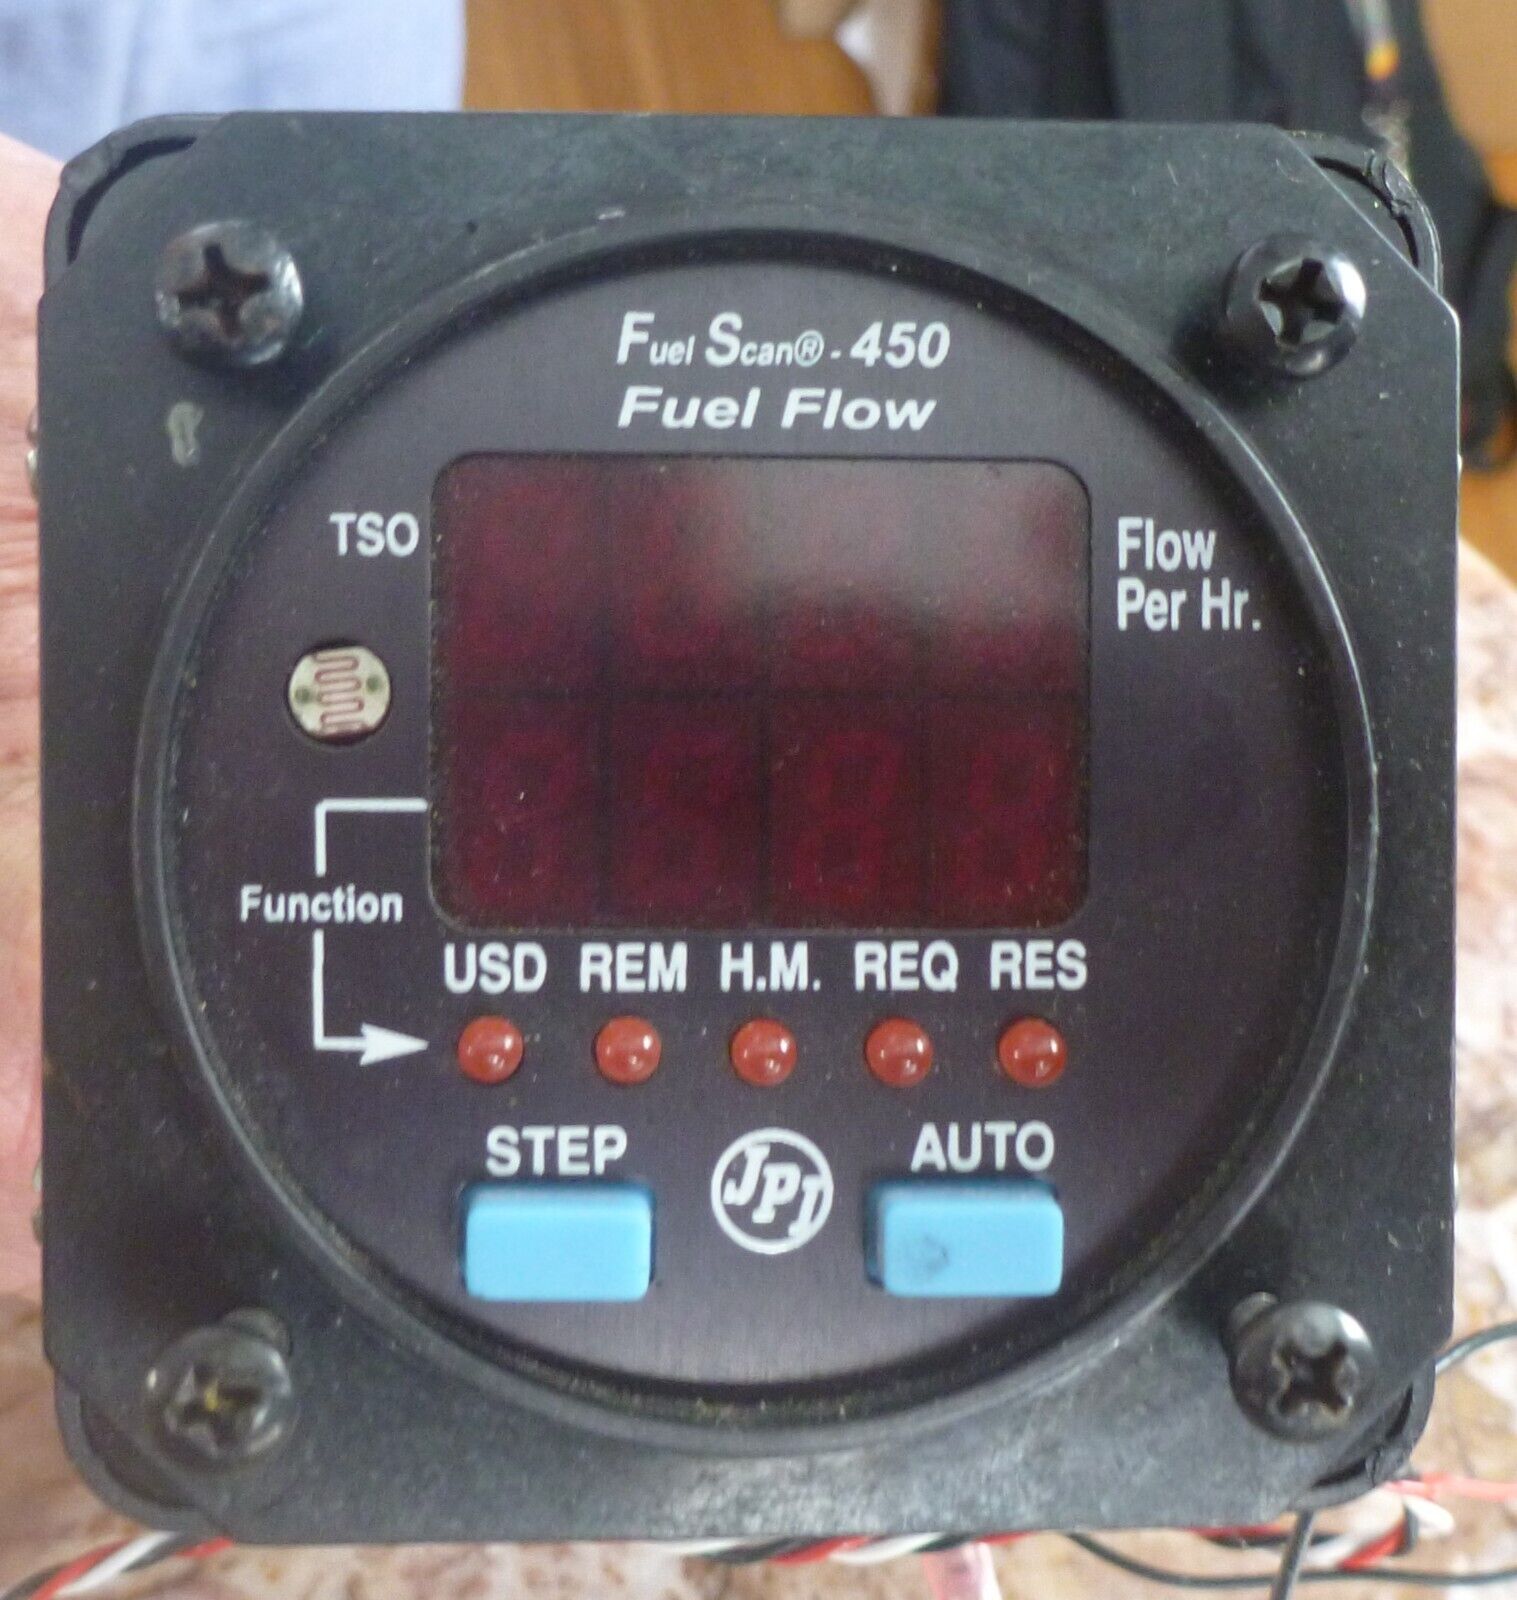 JP Instruments fuel scan 450